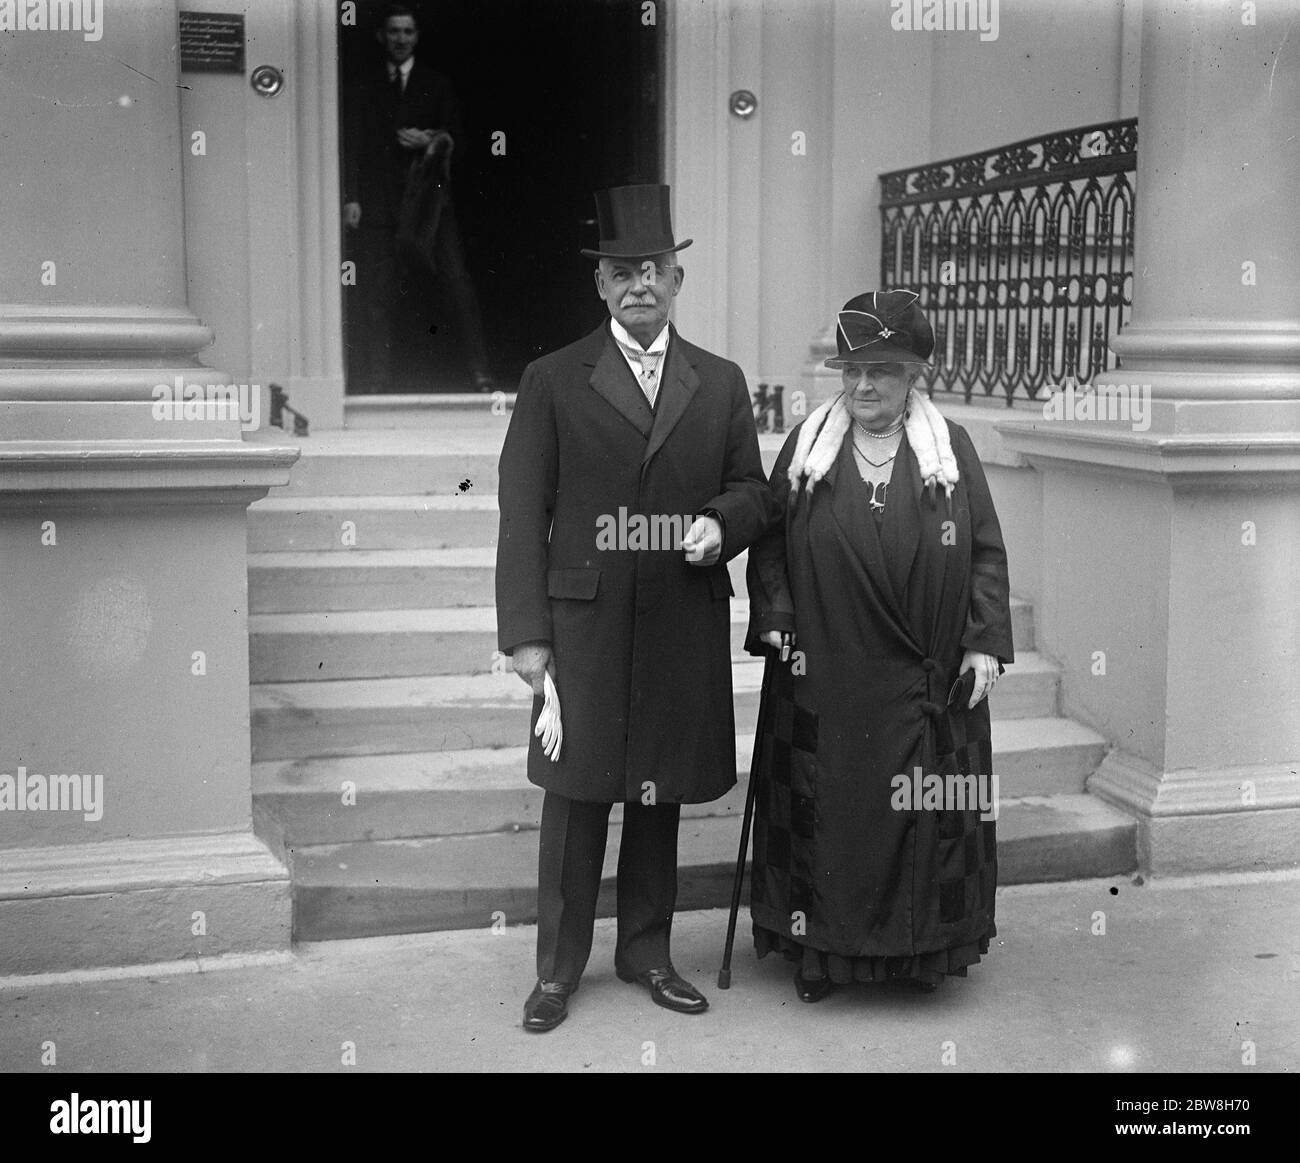 Deutscher Botschafter verabschiedet sich von König und Königin. Der deutsche Botschafter Friedrich Sthamer verlässt mit seiner Frau die deutsche Botschaft. Oktober 1930 Stockfoto